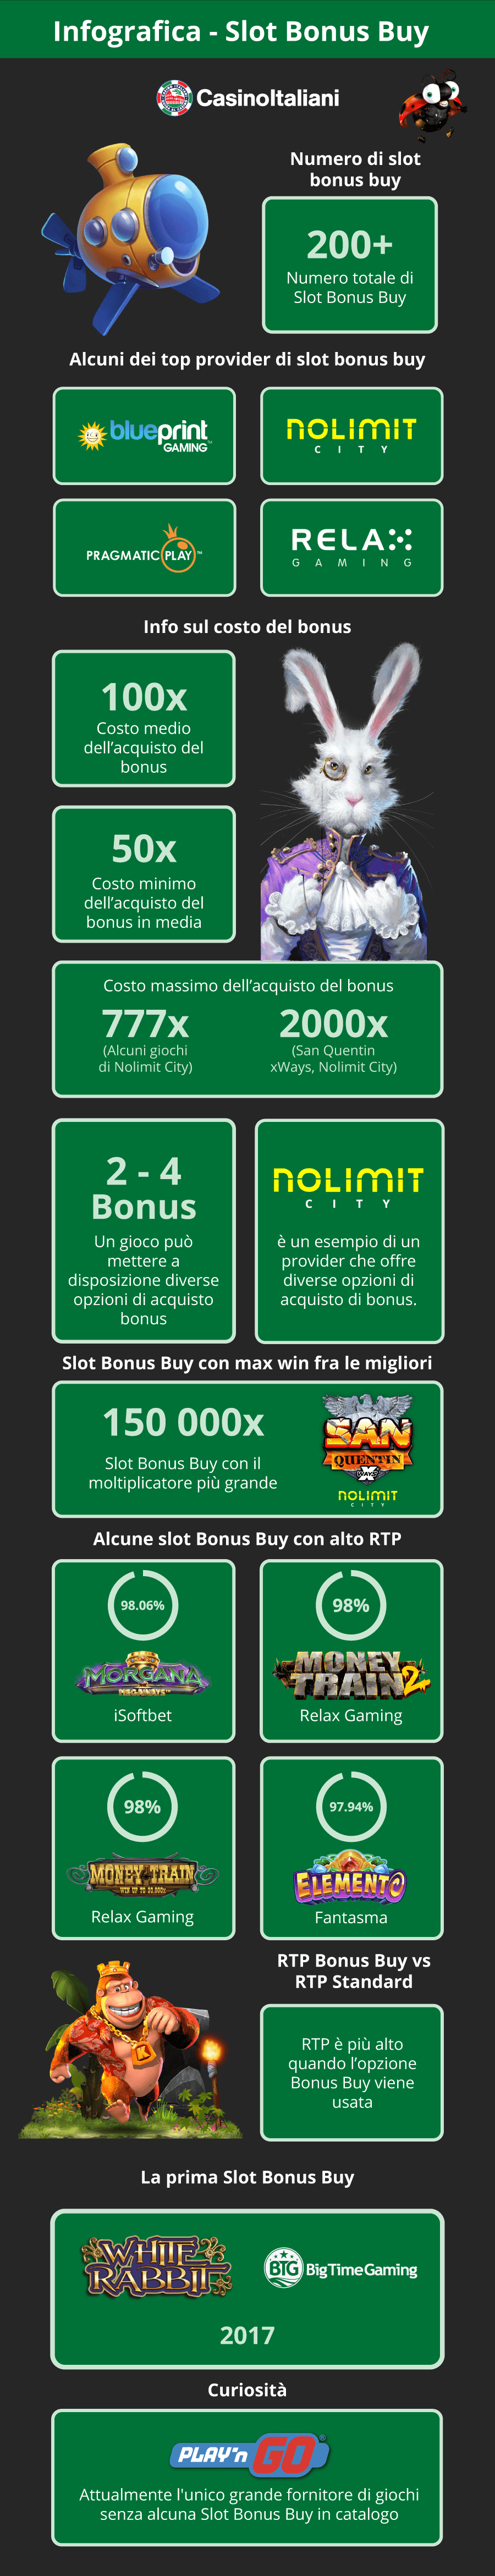 Infografica slot con acquisto bonus (con funzione Bonus Buy)